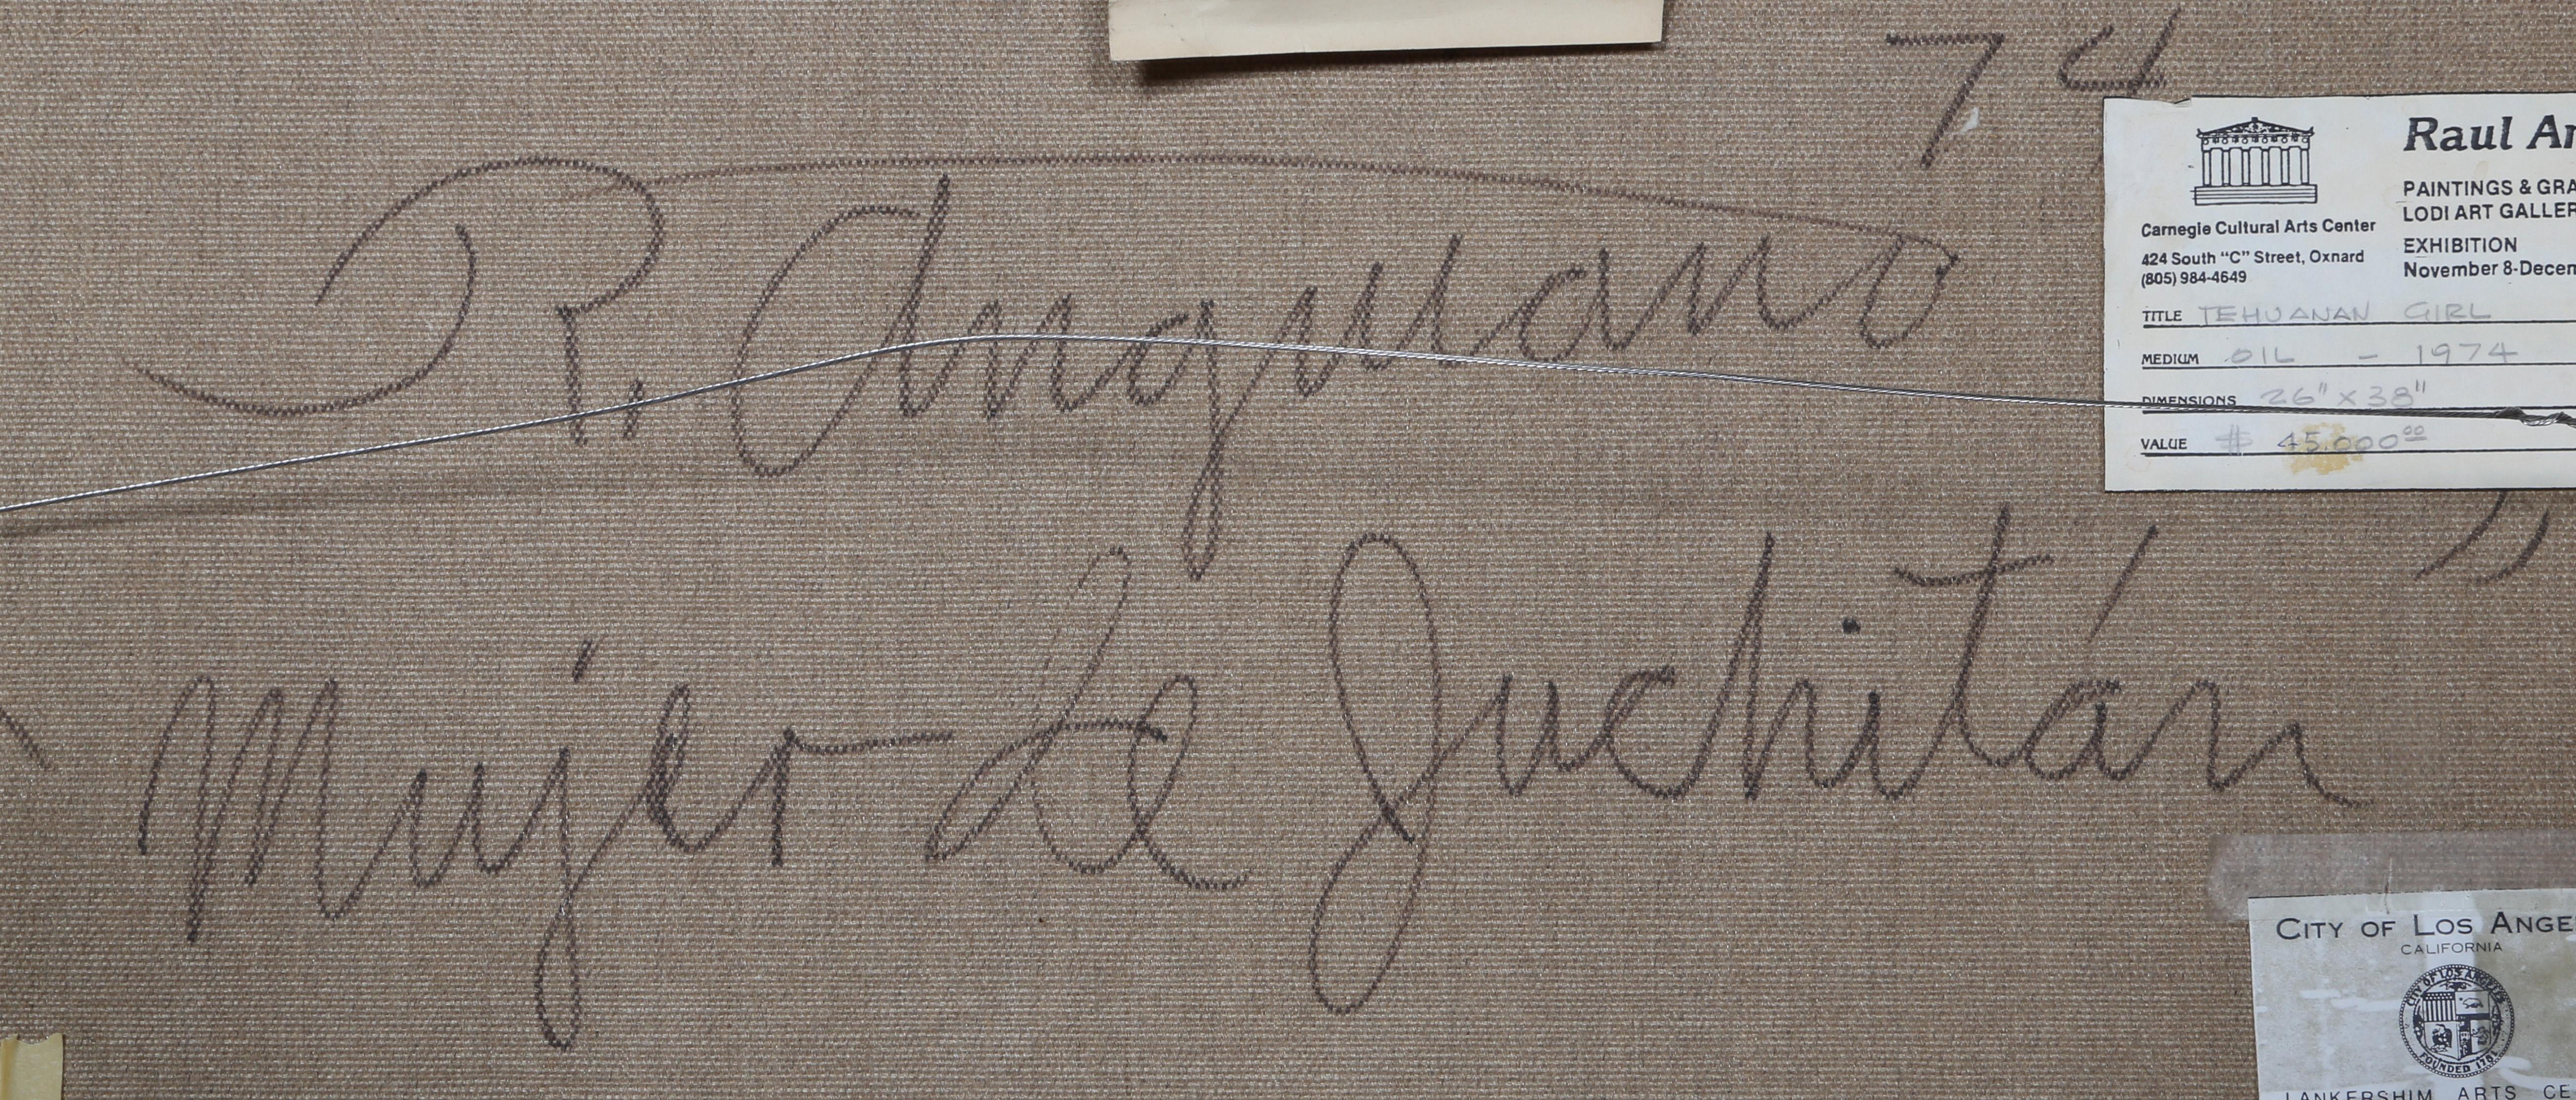 Artistics : Raul Anguiano, Mexicain (1915 - 2006)
Titre Mujer de Juchitan 
Année : 1974
Moyen d'expression : Huile sur toile, signée à gauche, signée, datée et titrée au verso.
Taille : 25.5 x 37.25 in. (64.77 x 94.62 cm)
Taille du cadre : 27 x 39